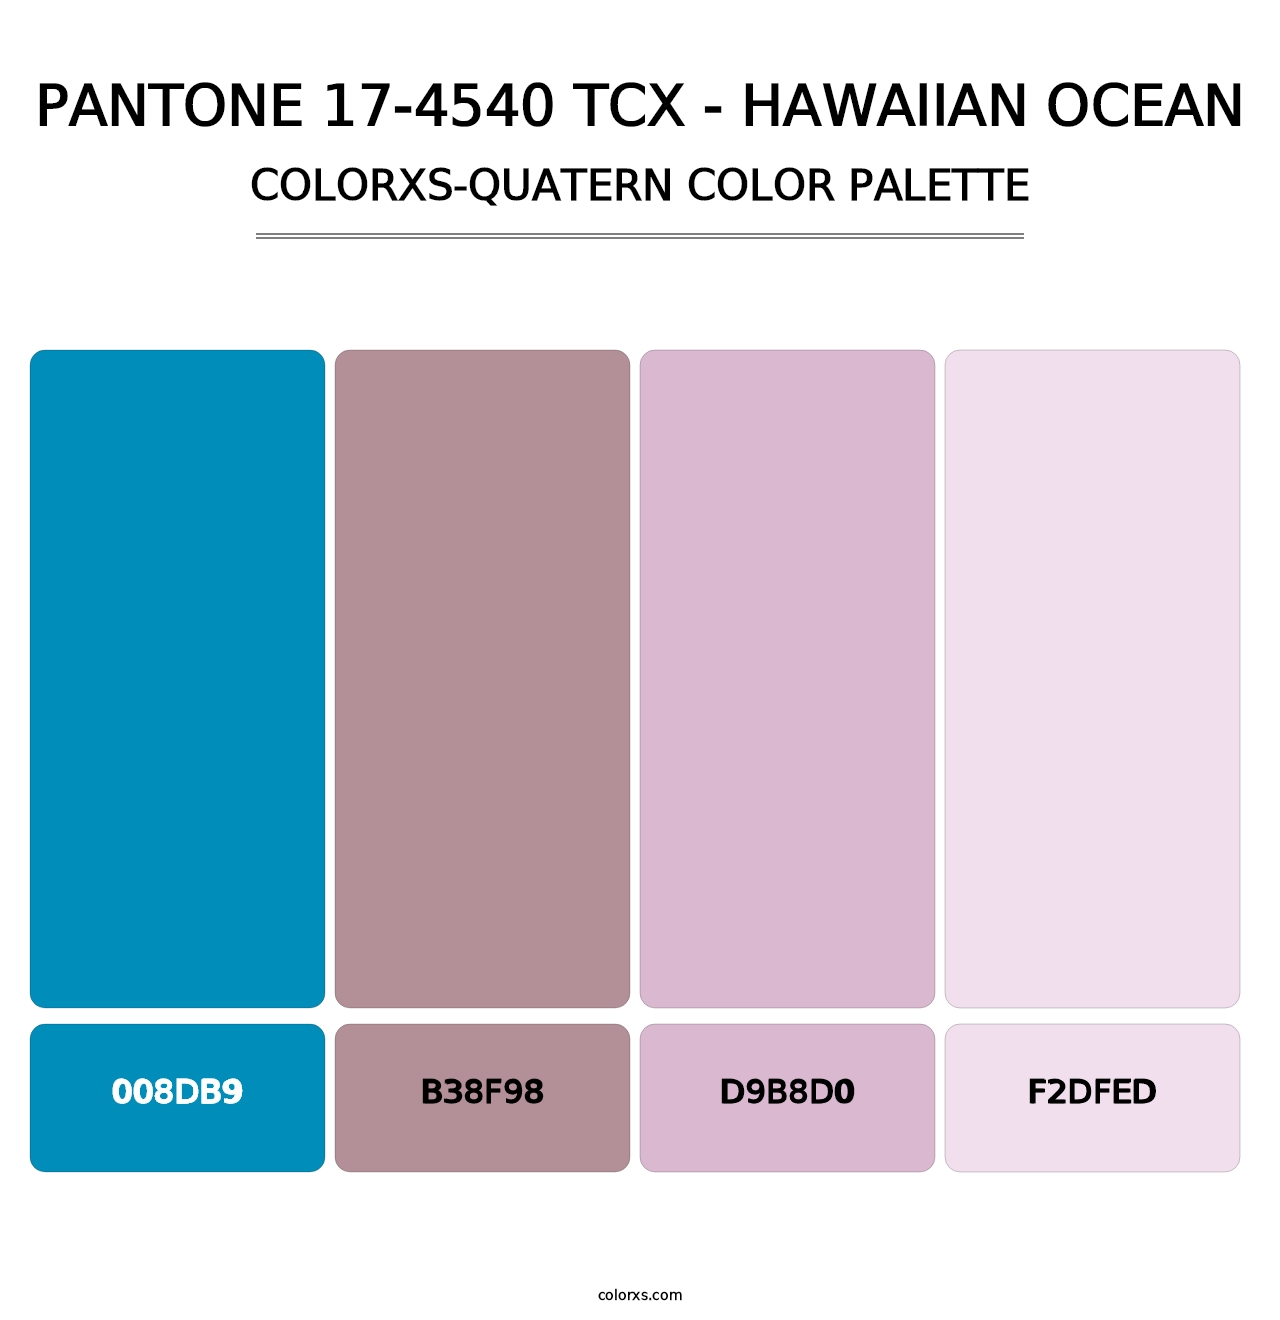 PANTONE 17-4540 TCX - Hawaiian Ocean - Colorxs Quatern Palette